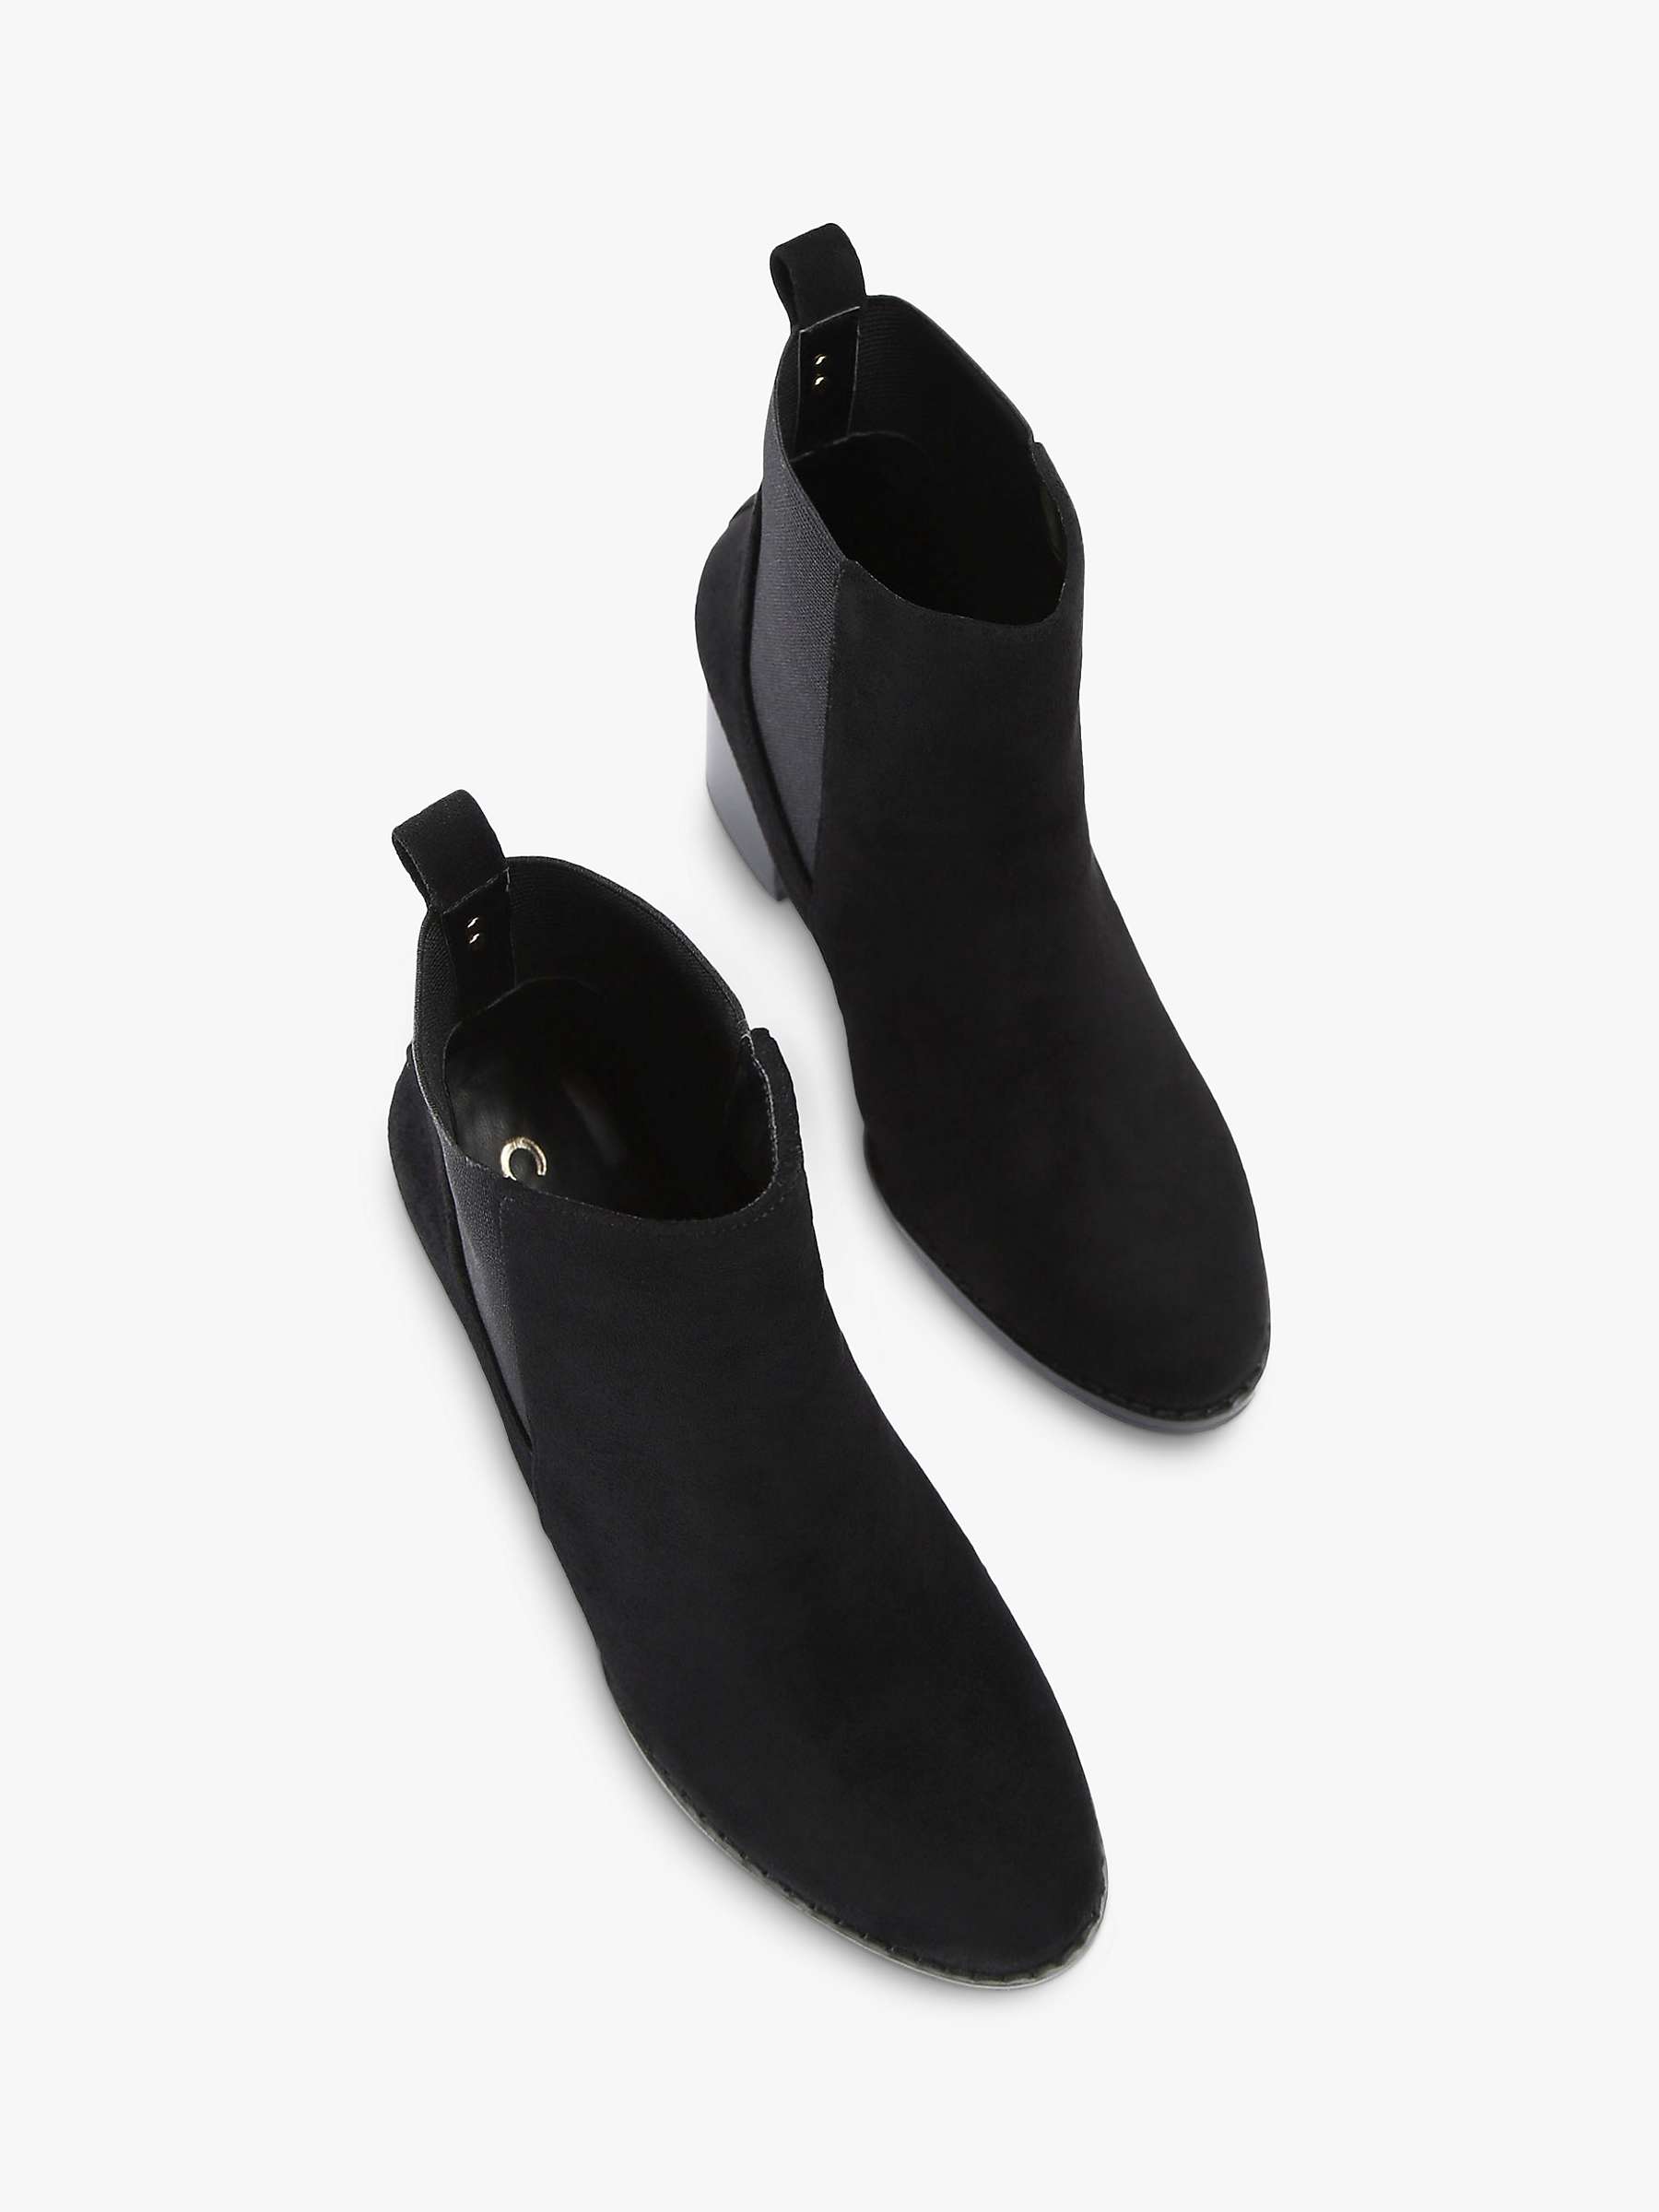 Buy Carvela Toodle Block Heel Chelsea Boots, Black Online at johnlewis.com